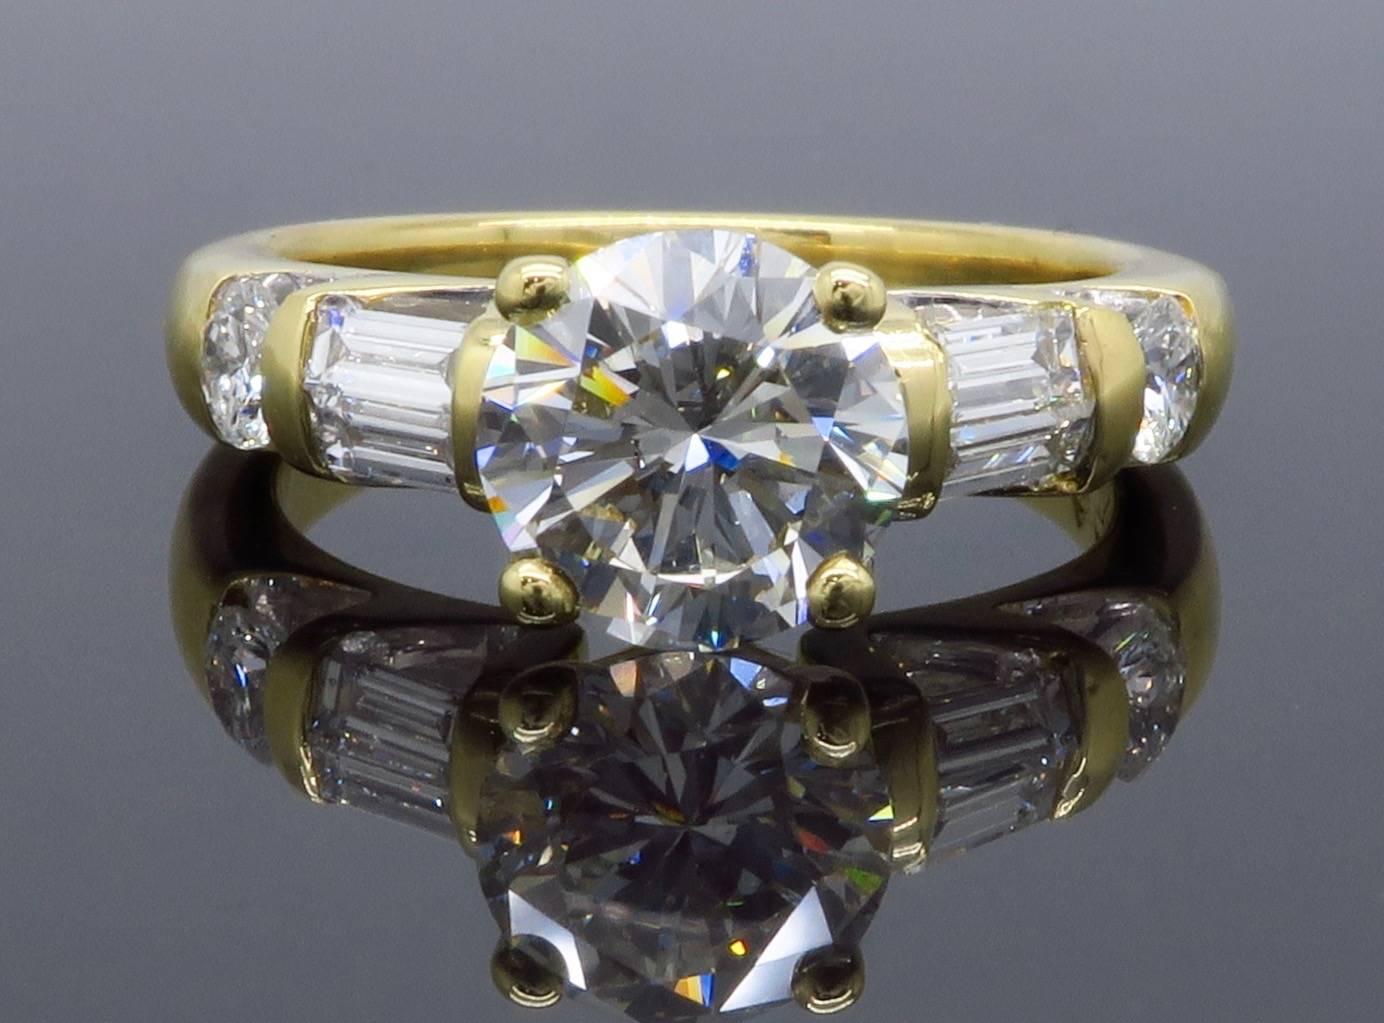 Round Cut GIA Certified 1.66 Carat Diamond Engagement Ring in 18 Karat Yellow Gold